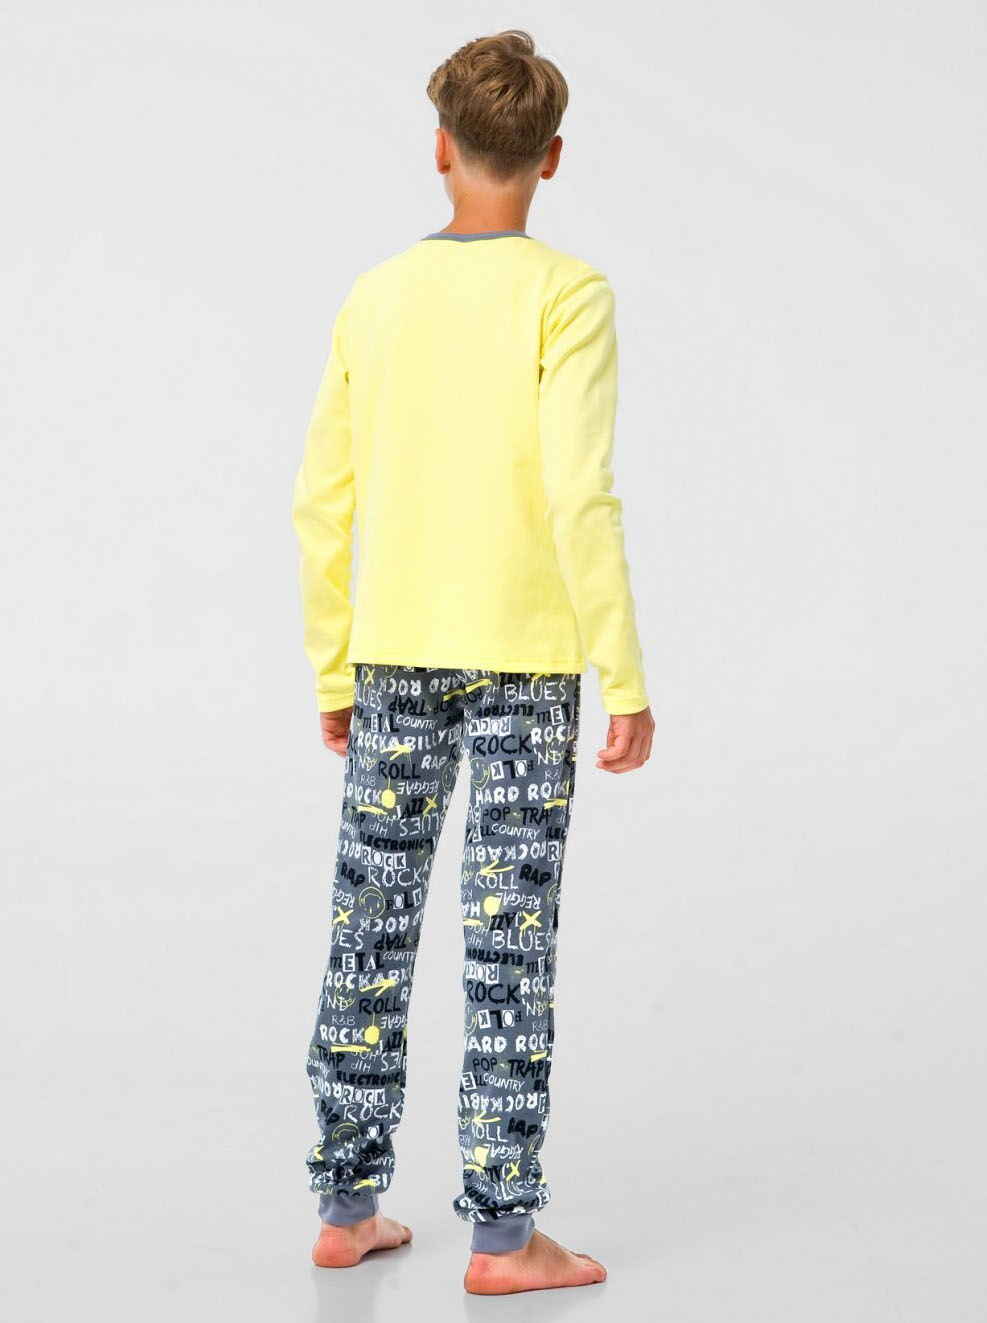 Пижама для мальчика Smil Rock желтая 104801 - размеры